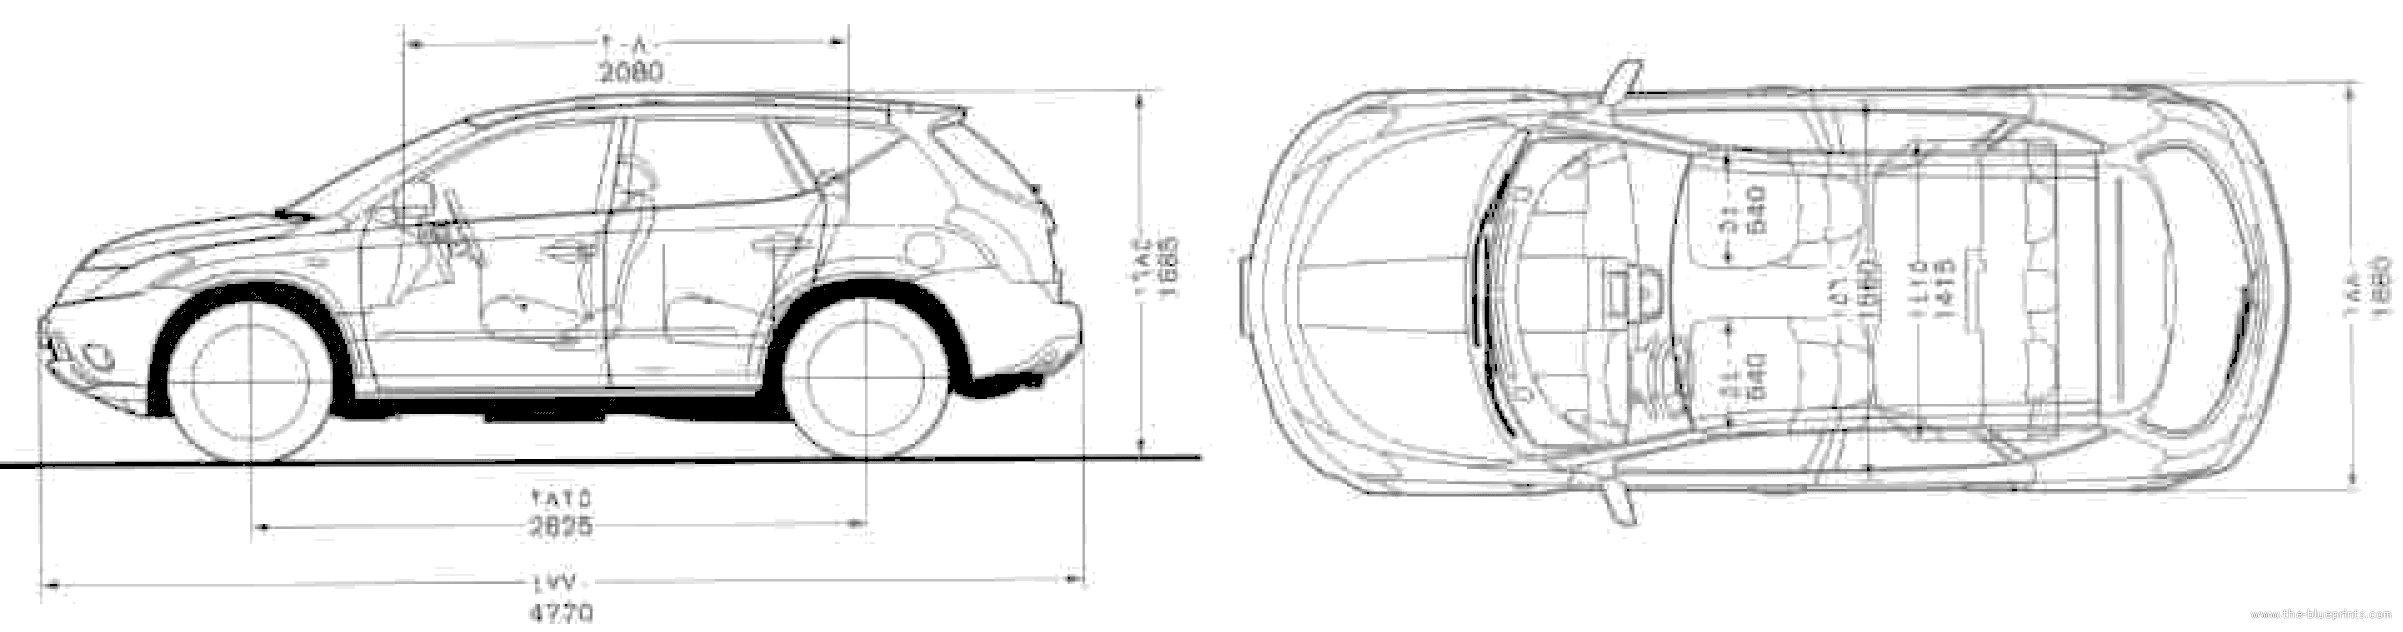 Nissan murano interior dimensions #1